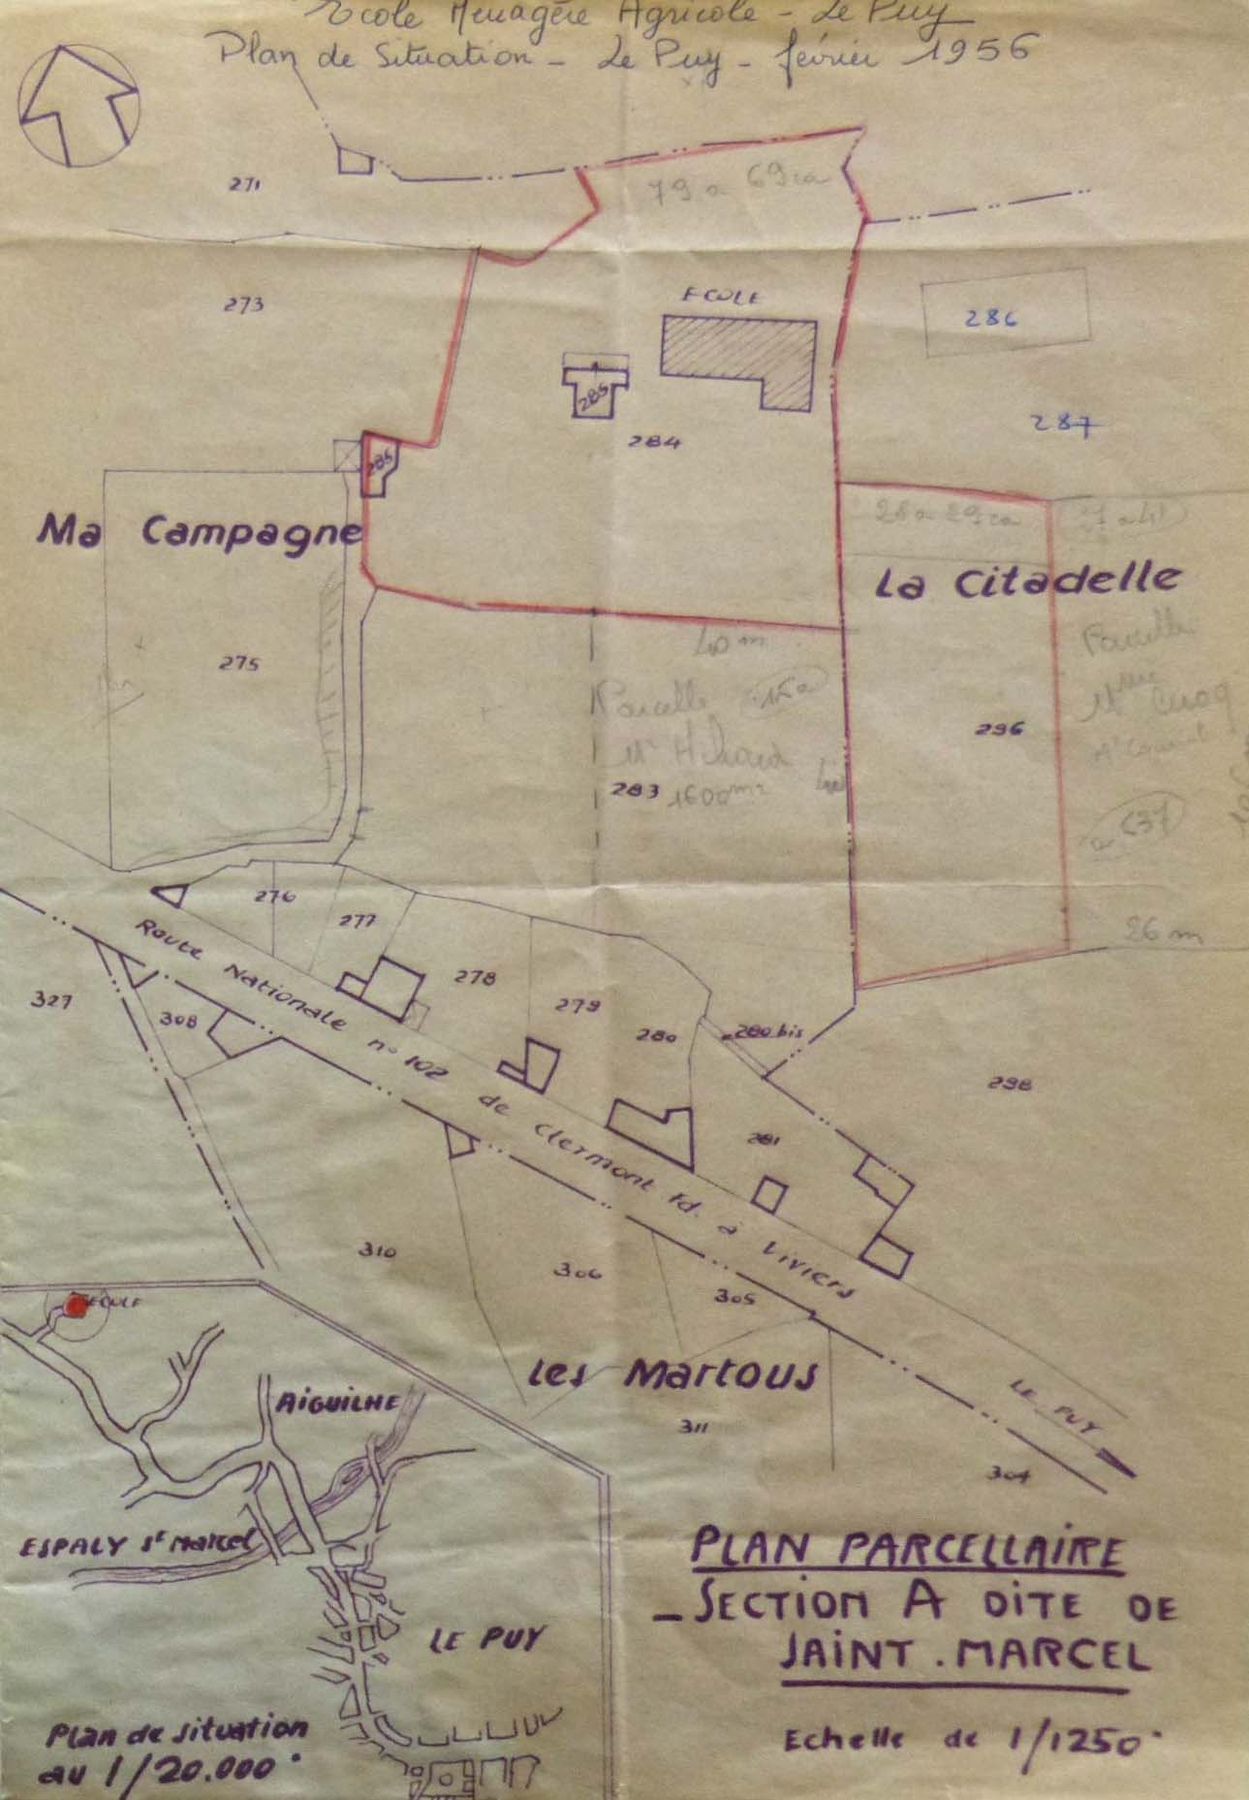 Plan de situation de l’école départementale d’enseignement ménager agricole, 1956 (Arch. dép. Haute-Loire, 2229 W 26).